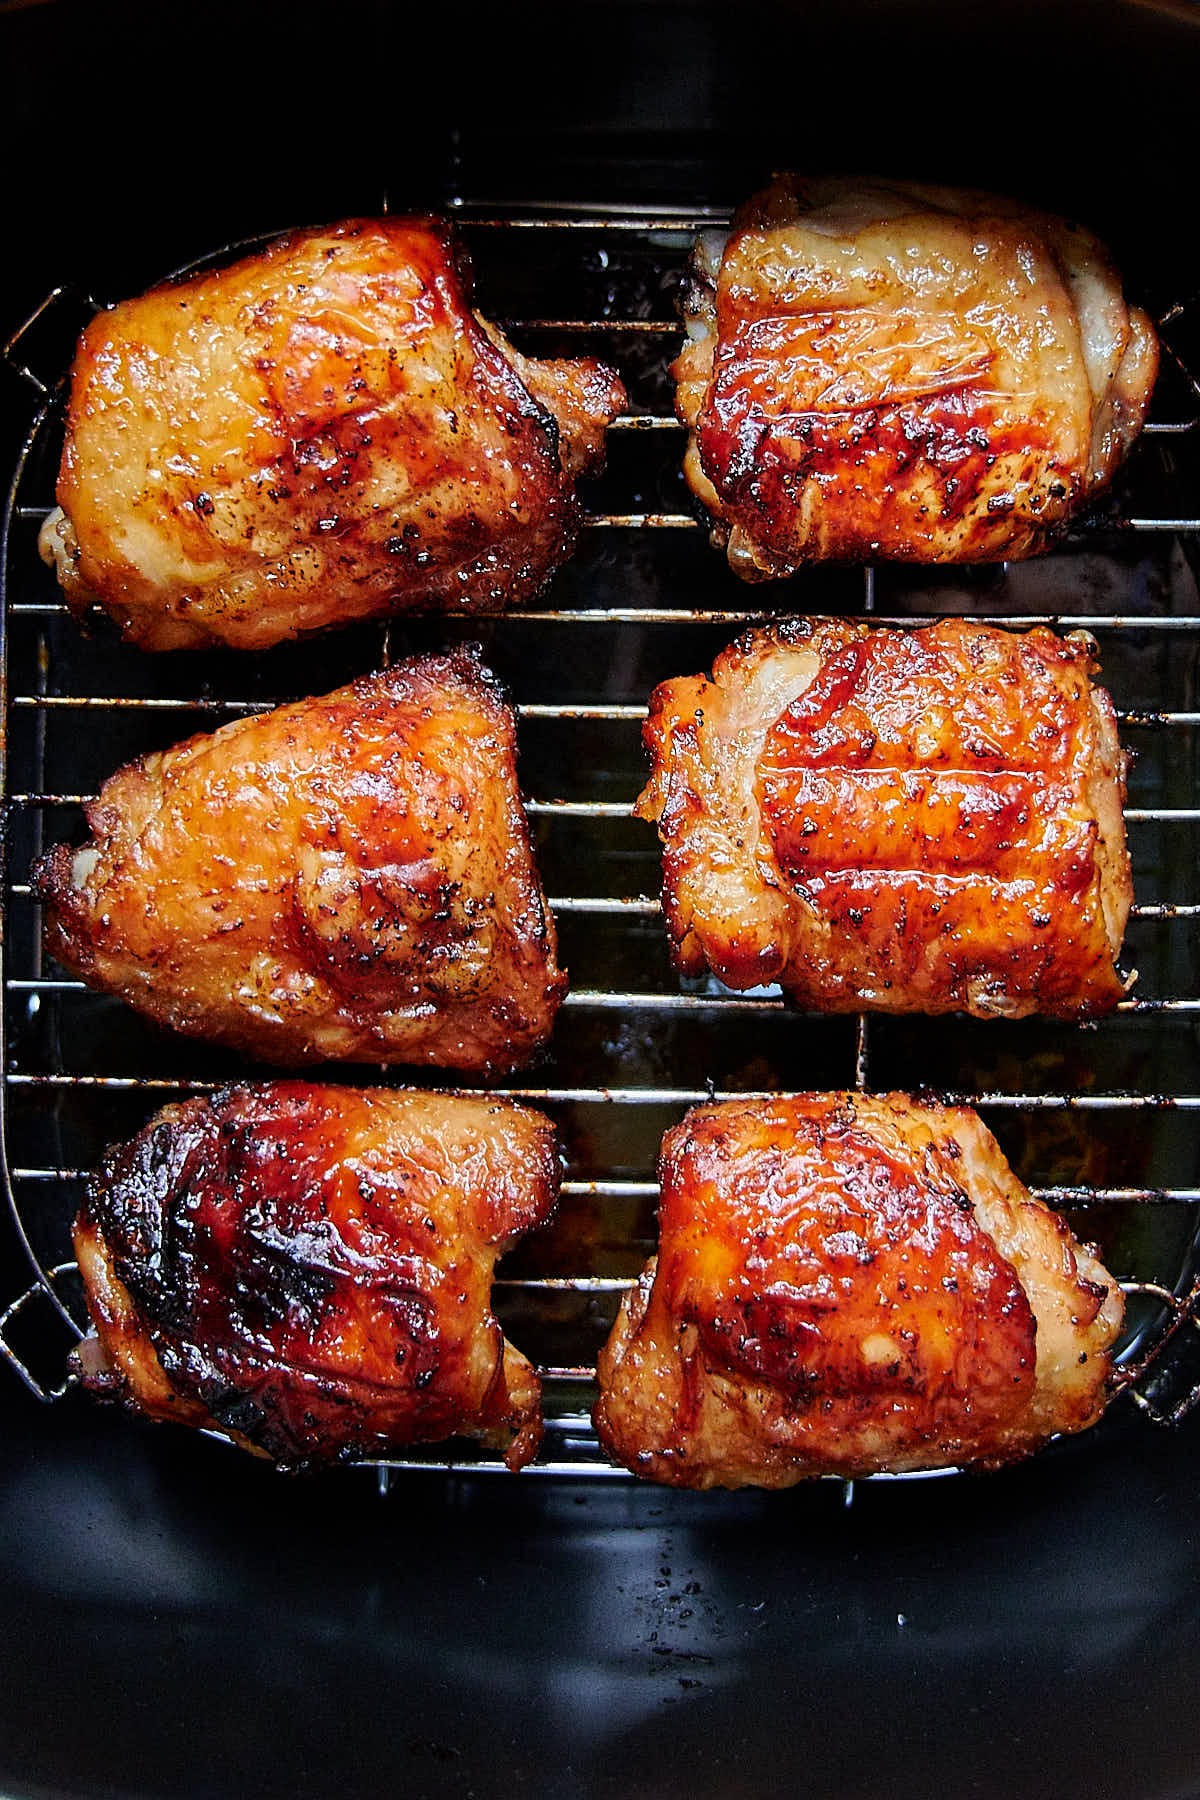 Top down view of six golden-brown, crispy chicken thighs inside an air fryer.